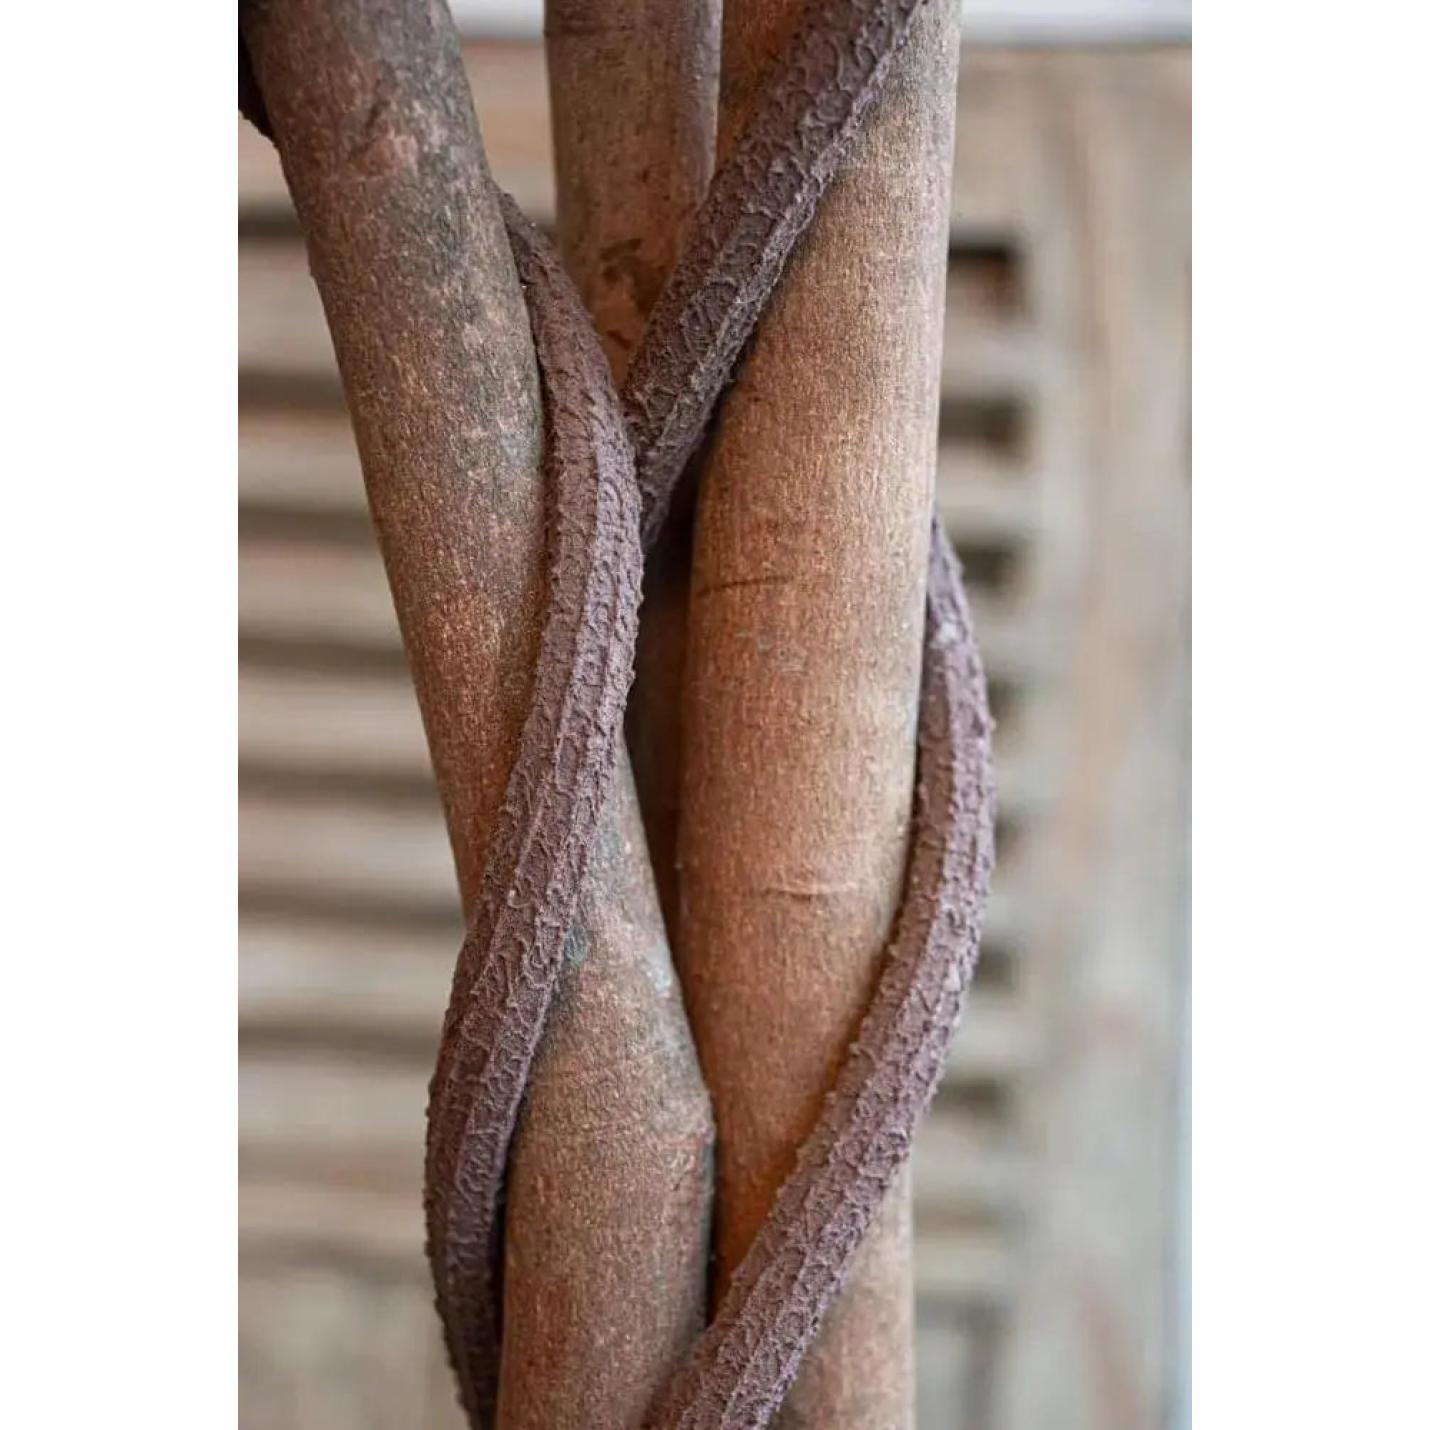 Bougainvillea  | Kunstplant | 165 cm | Natuurlijke Stam | Met of zonder Luxe pot De Kleurrijke